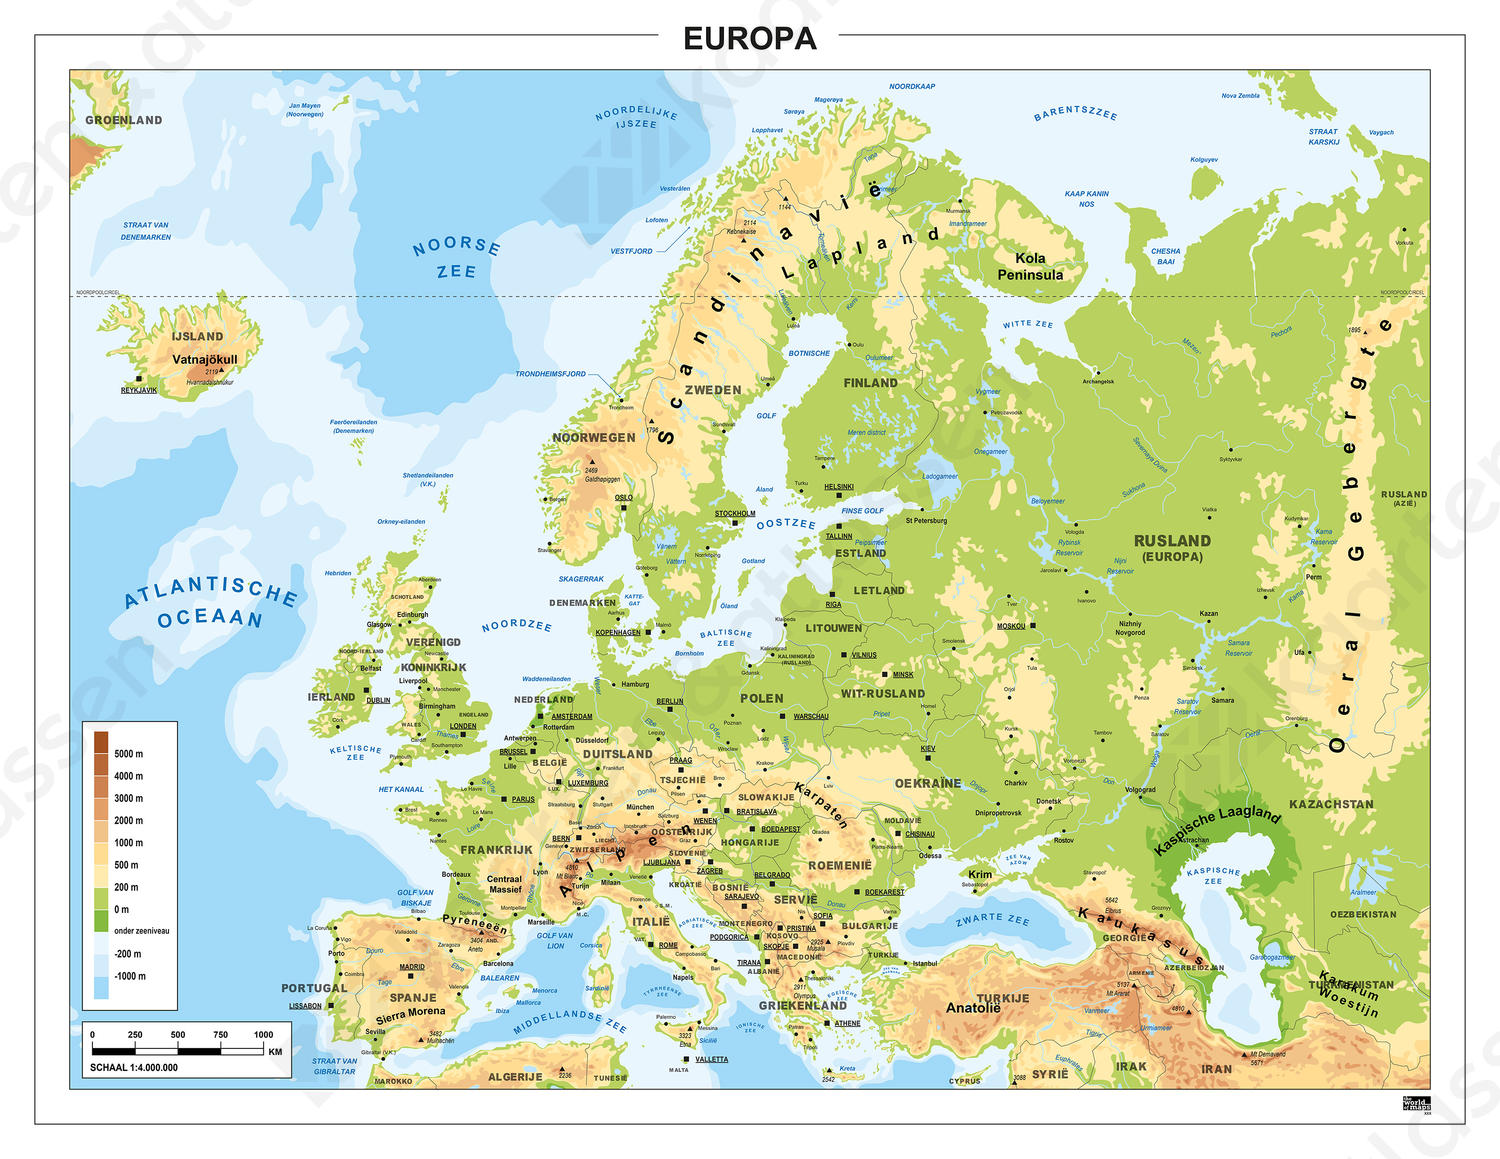 Europa Natuurkundig 1300 Kaarten en Atlassen.nl